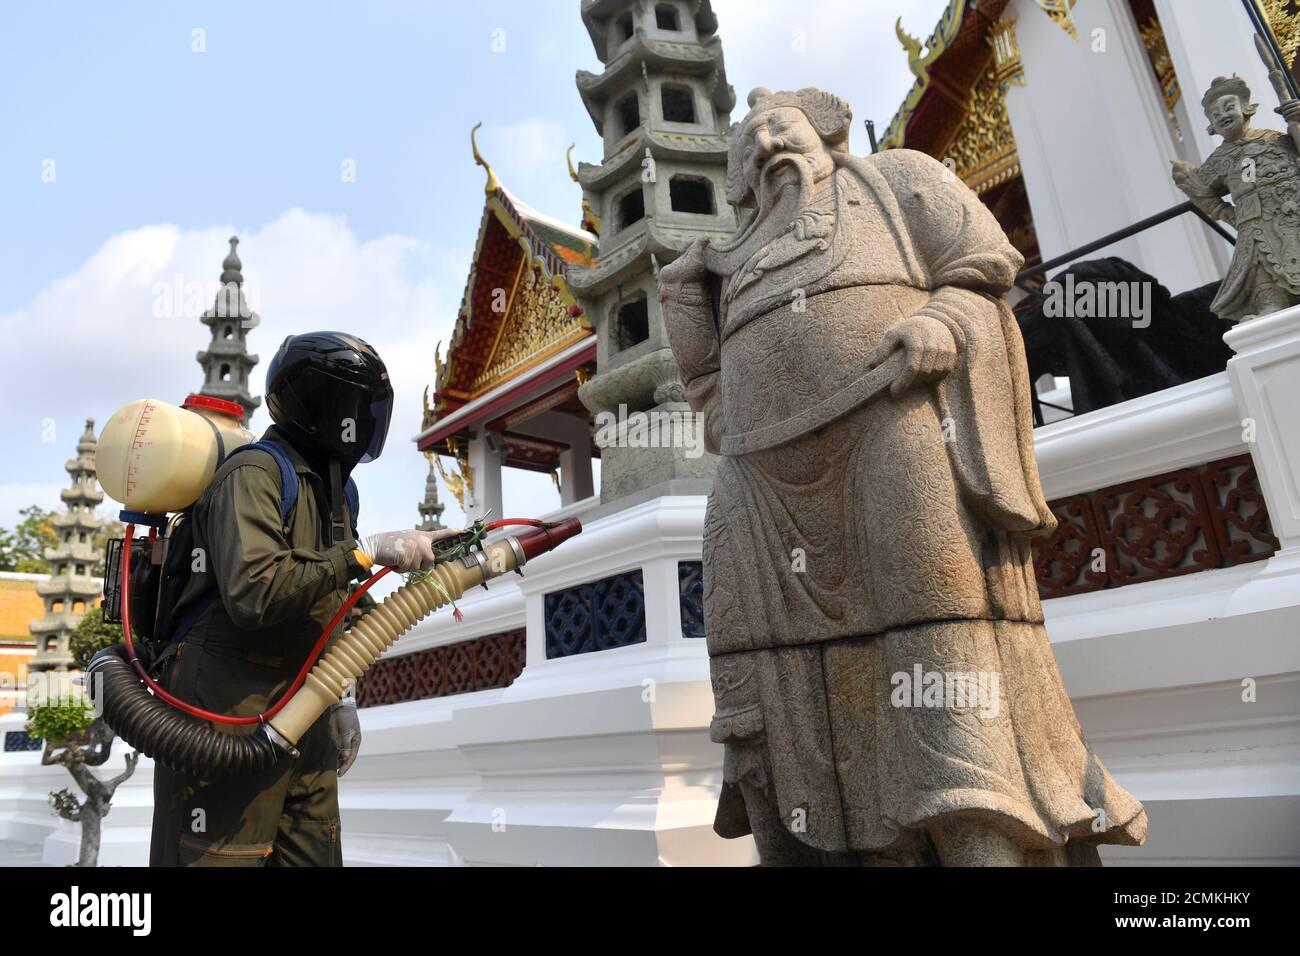 Un operatore sanitario spruzzi disinfettante a causa dell'epidemia di coronavirus all'interno del tempio di Wat Suthat Thepwararam a Bangkok, Thailandia 17 marzo 2020. REUTERS/Chalinee Thirasupa Foto Stock